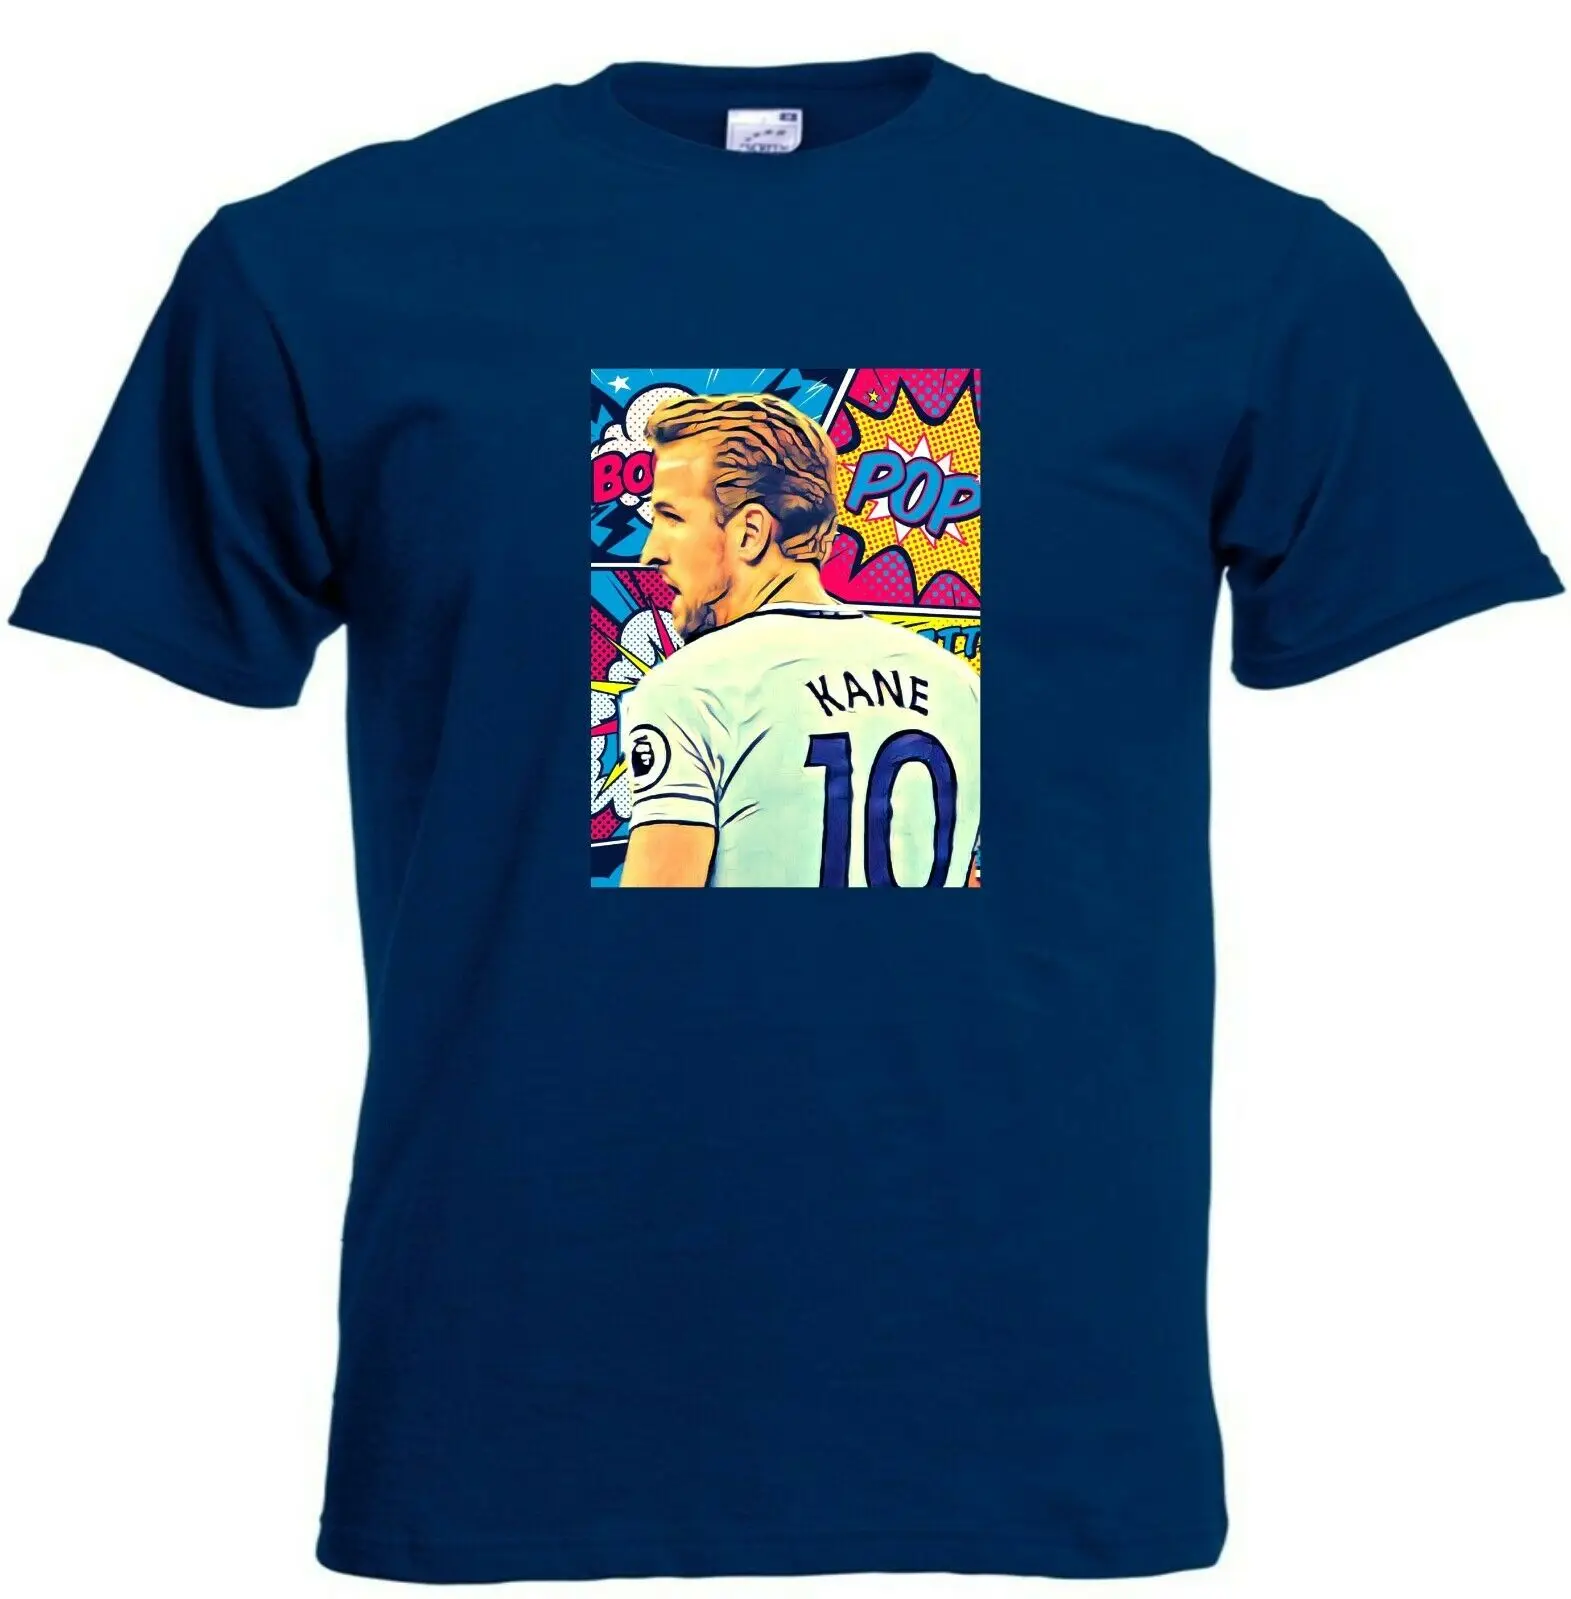 

Kids Harry Knae of Tottenham Hotspur Football Club Retro Pop Art T-Shirt Men Women Unisex Fashion tshirt Free Shipping Short Sl